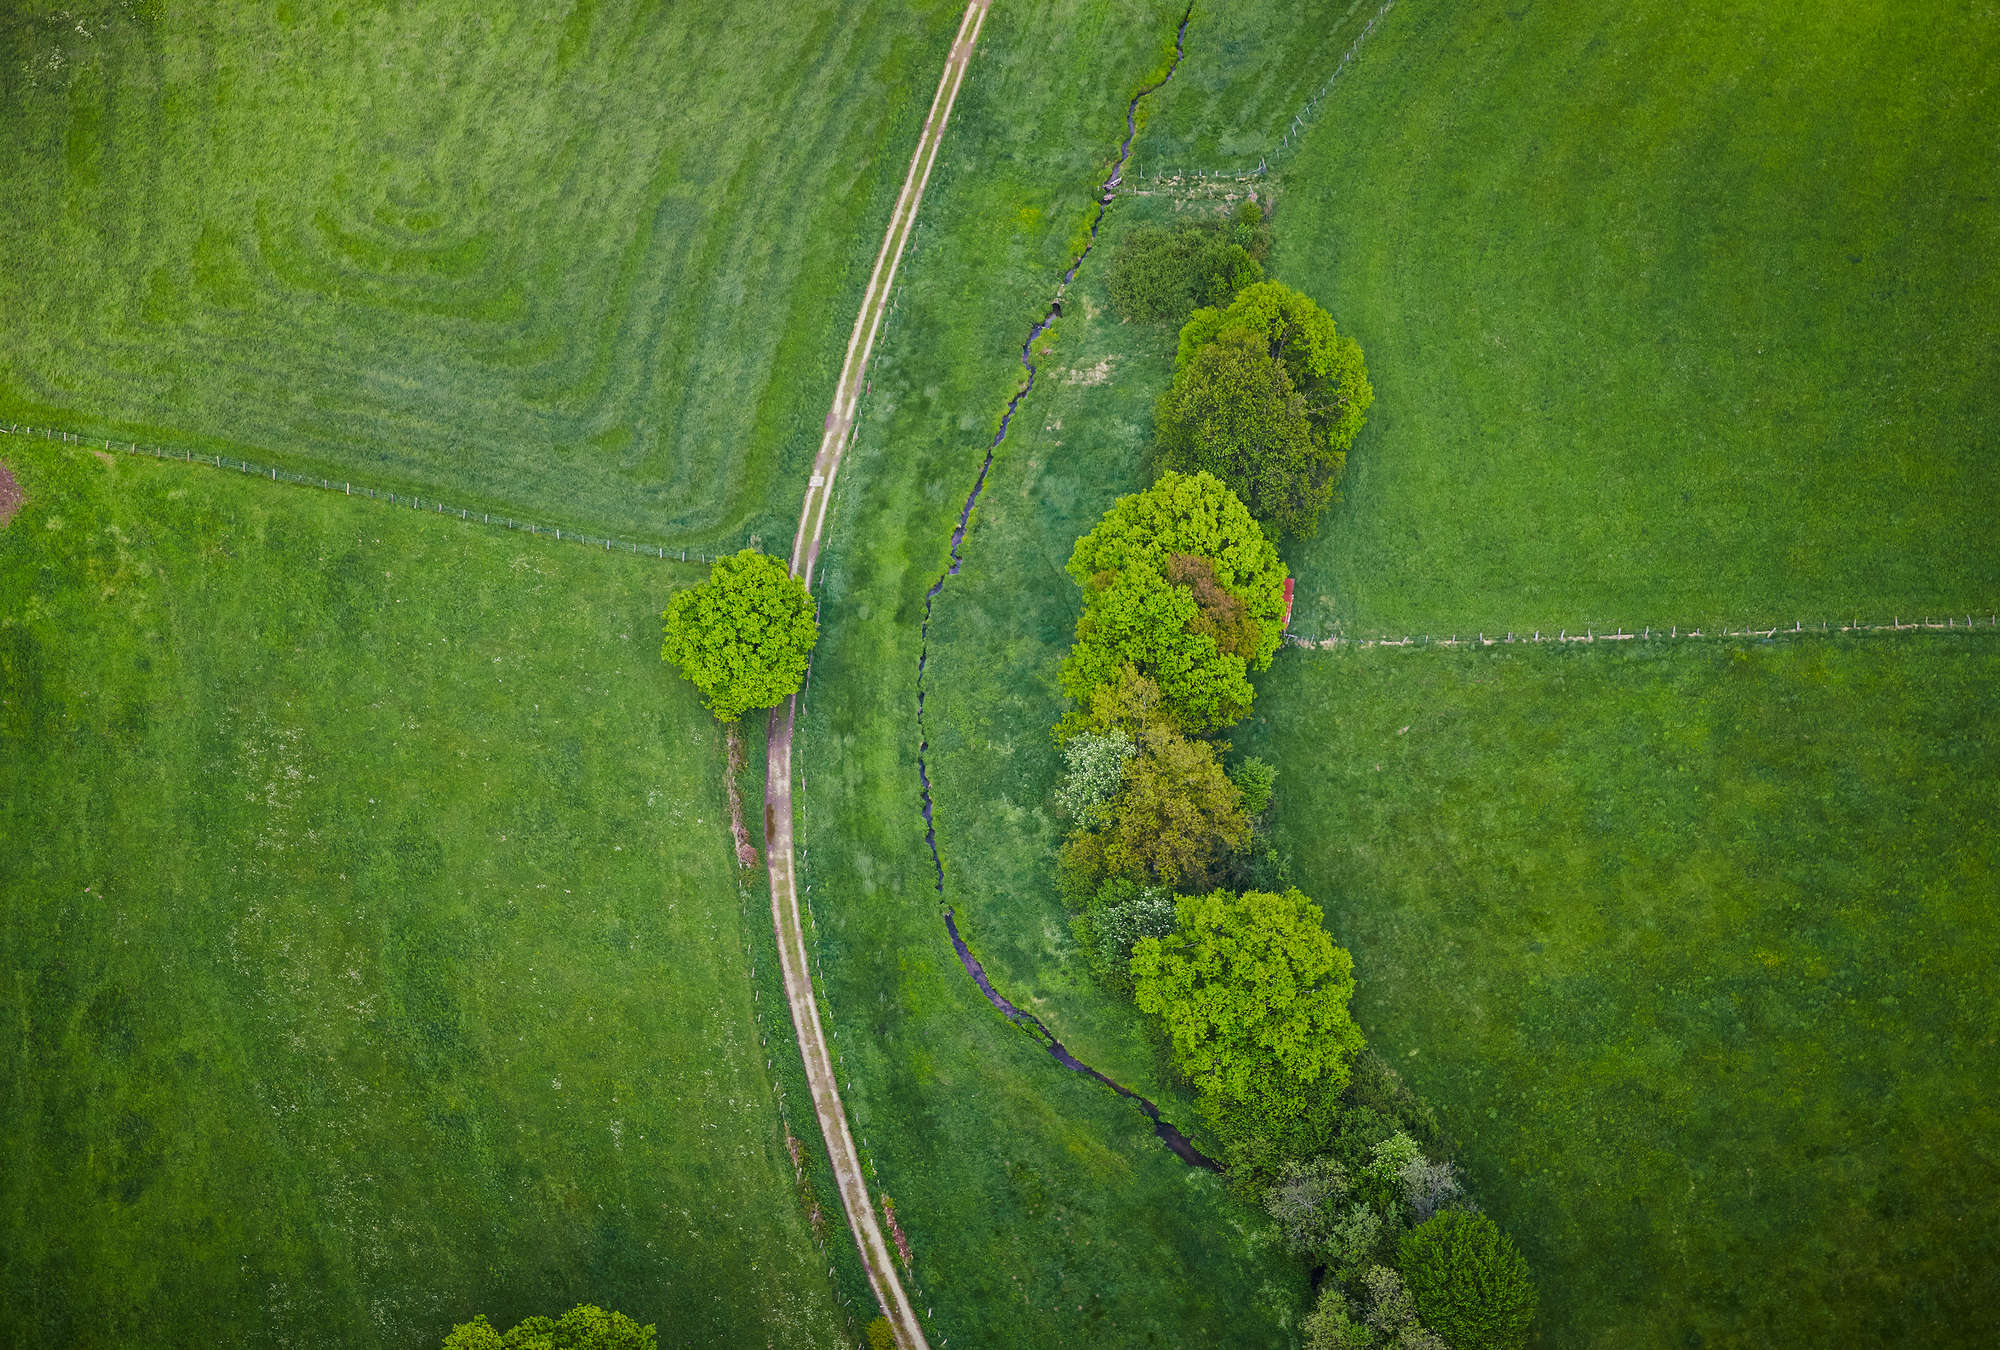             Gras Landschaft aus der Vogelperspektive – Feld mit Bäumen
        